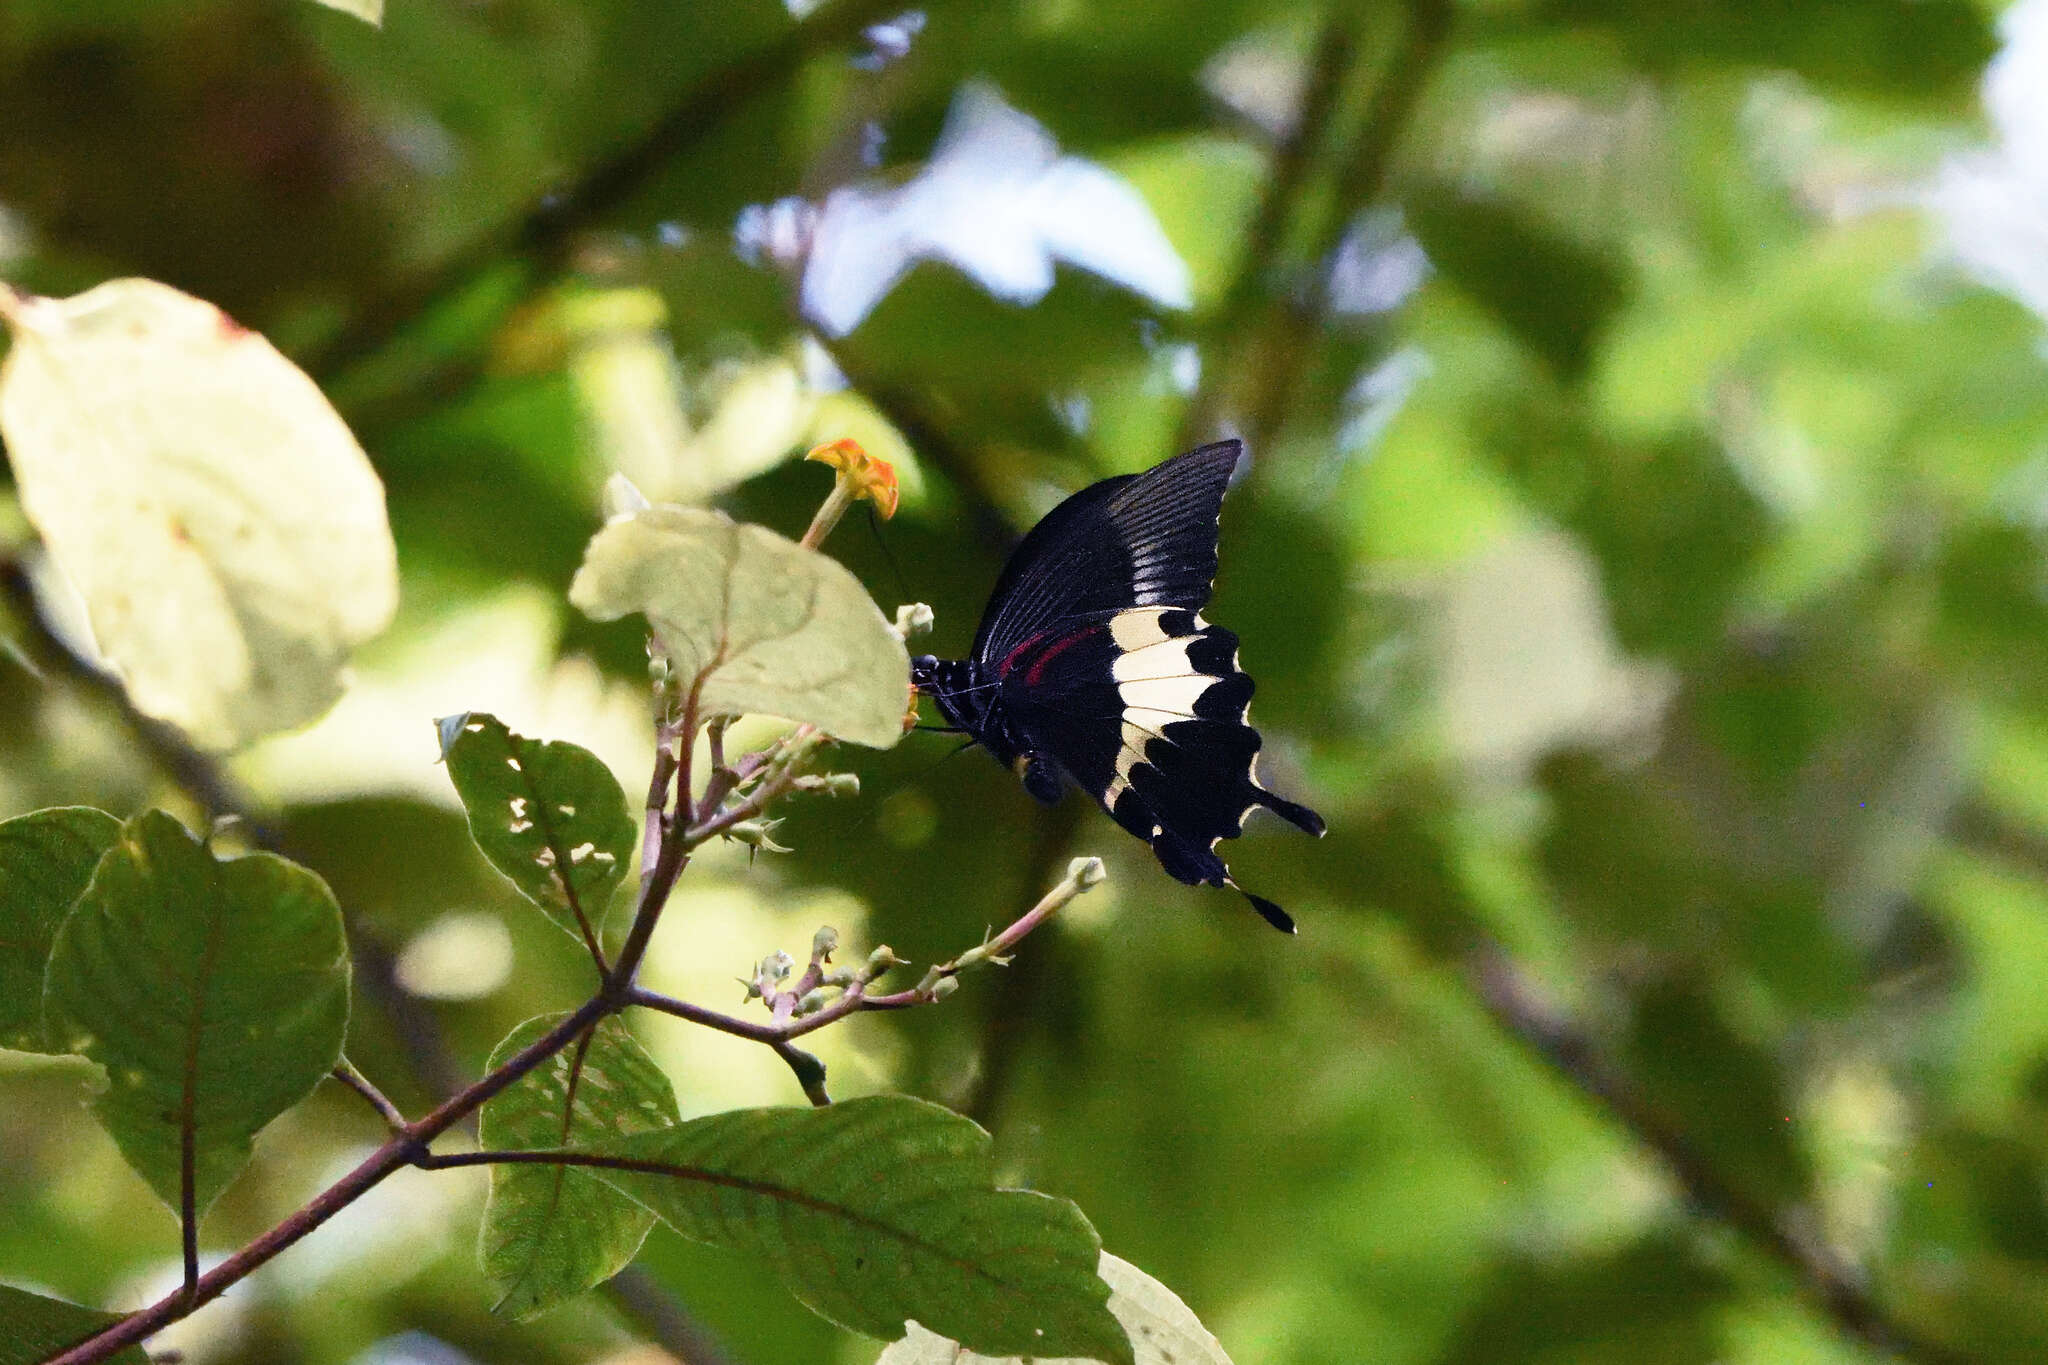 Image of Papilio diophantus Grose-Smith 1882